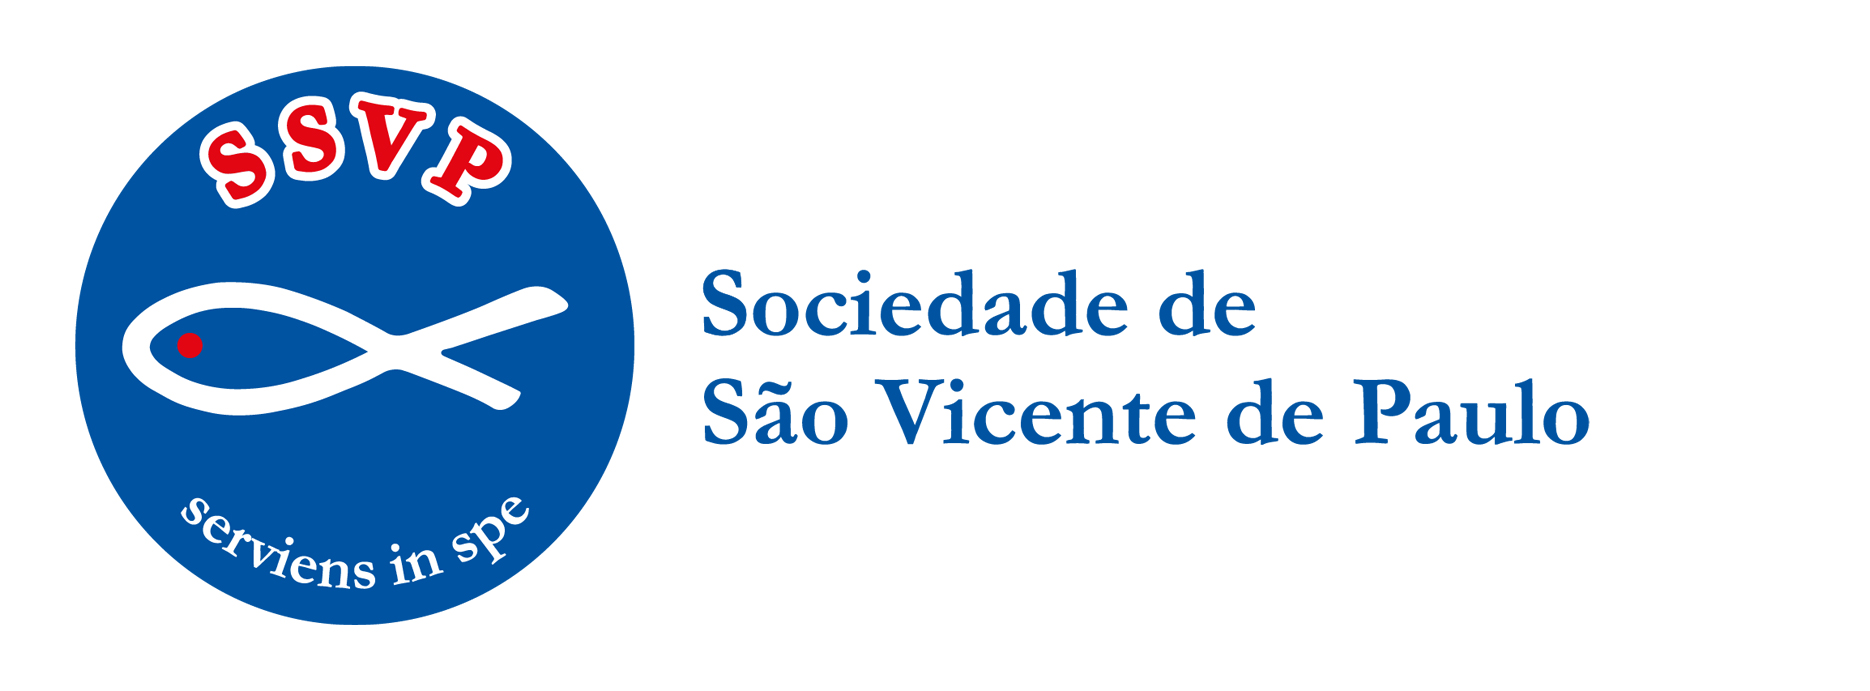 Lar Vicentino Obra Unida a Sociedade de São Vicente de Paulo